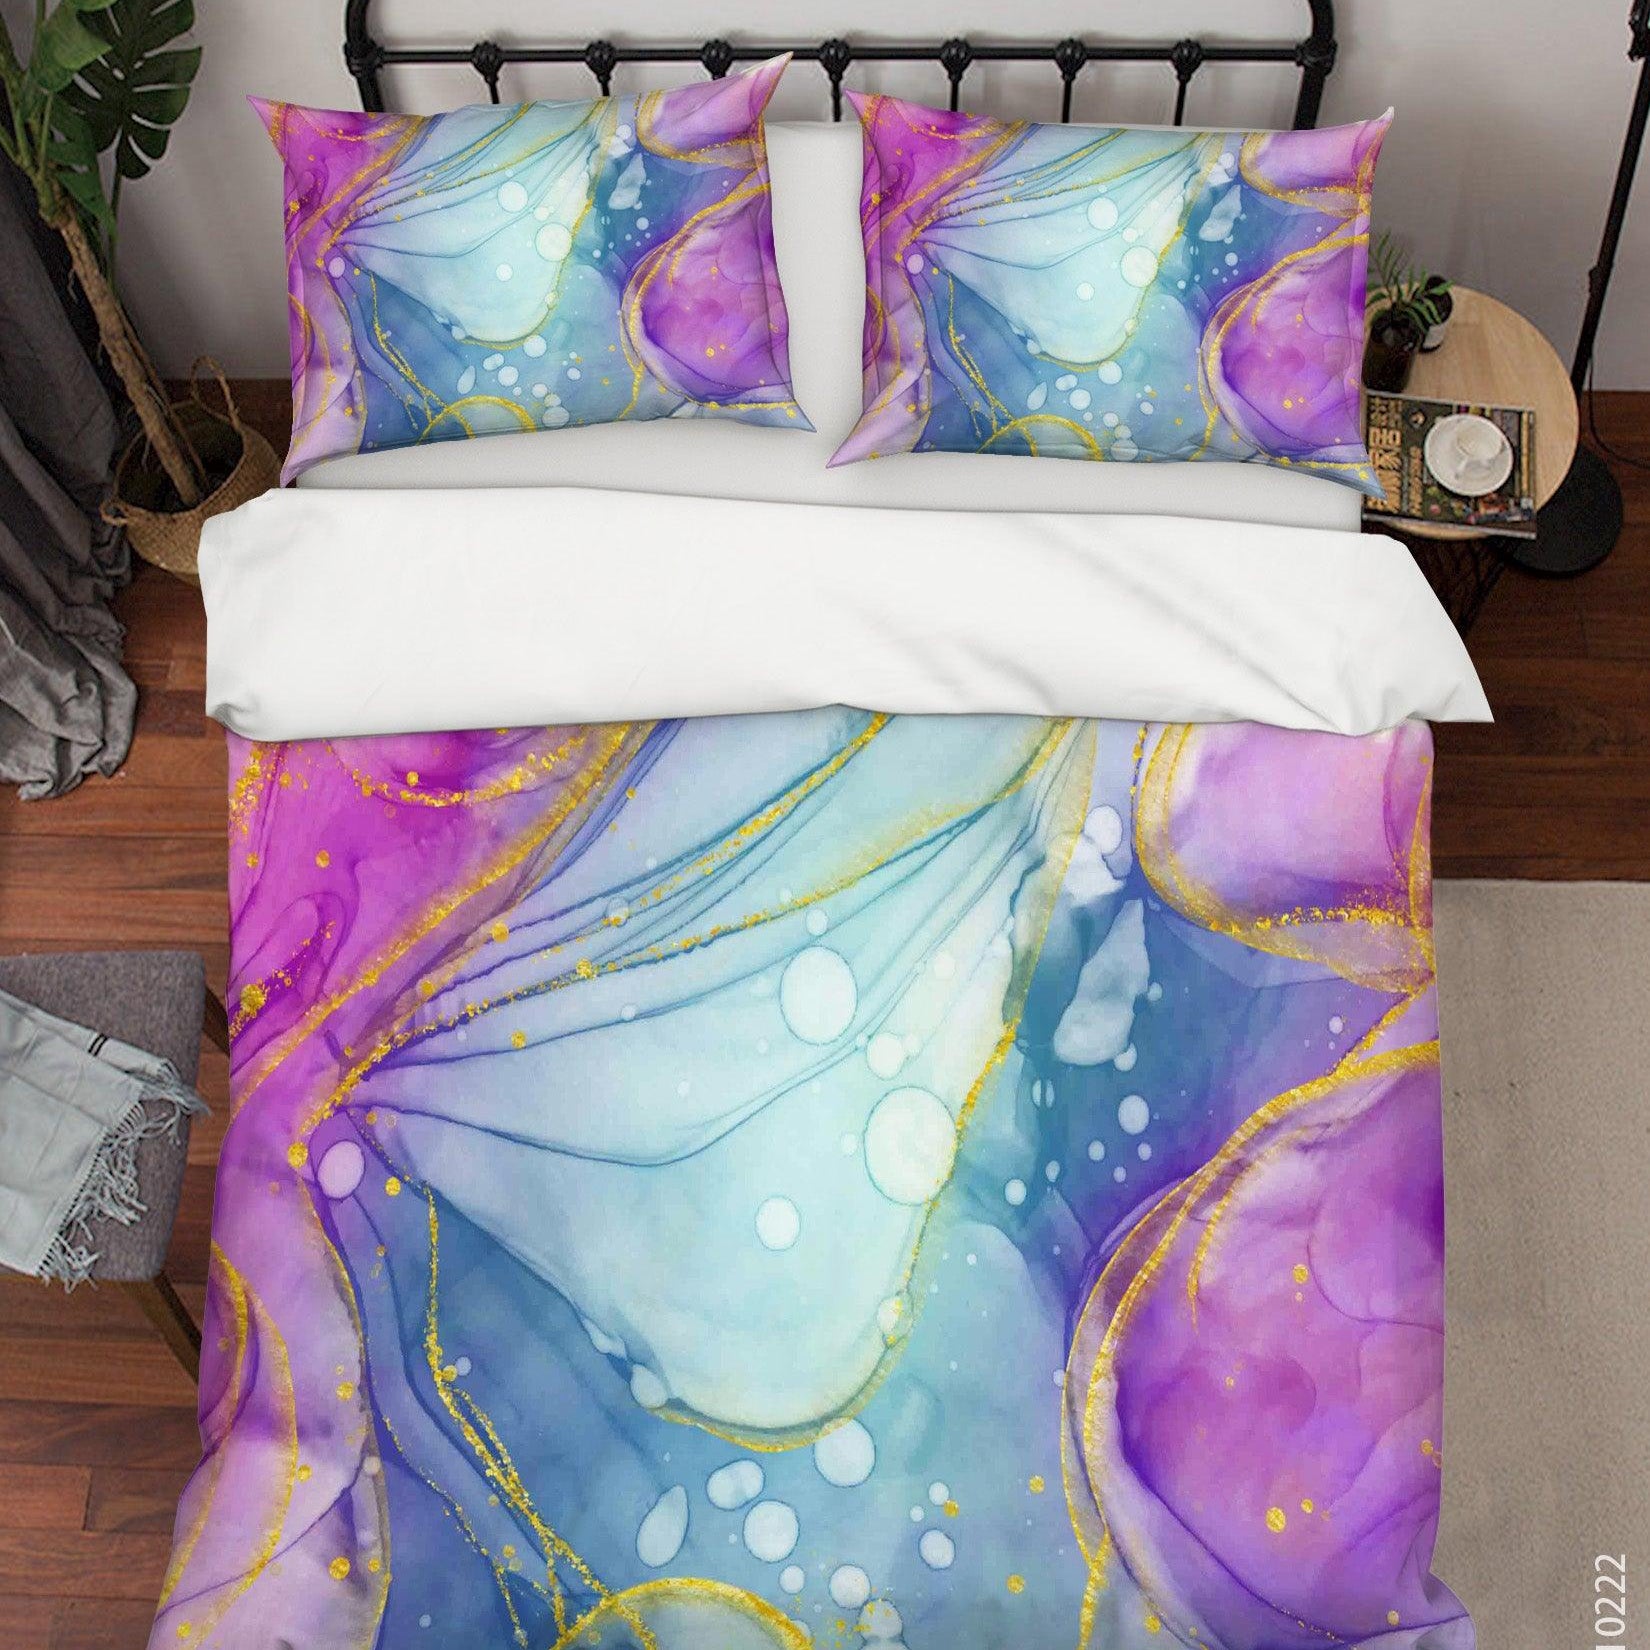 3D Watercolor Color Marble Quilt Cover Set Bedding Set Duvet Cover Pillowcases 171- Jess Art Decoration